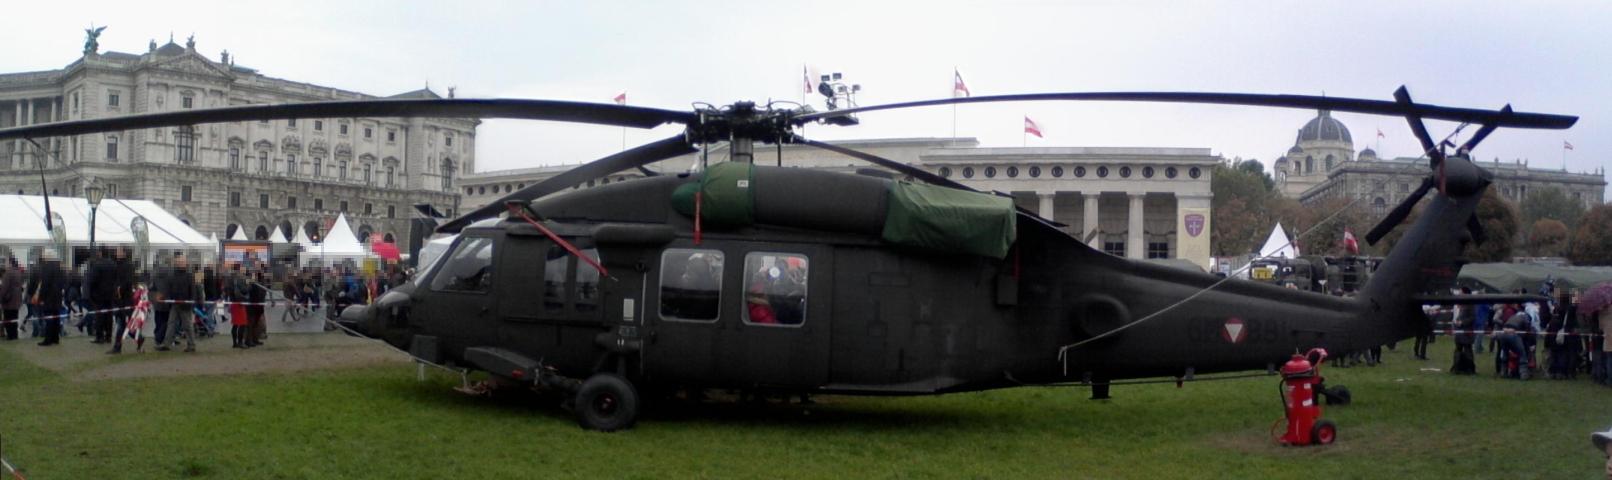 Einsatzhelikopter des österreichischen Bundesheeres.